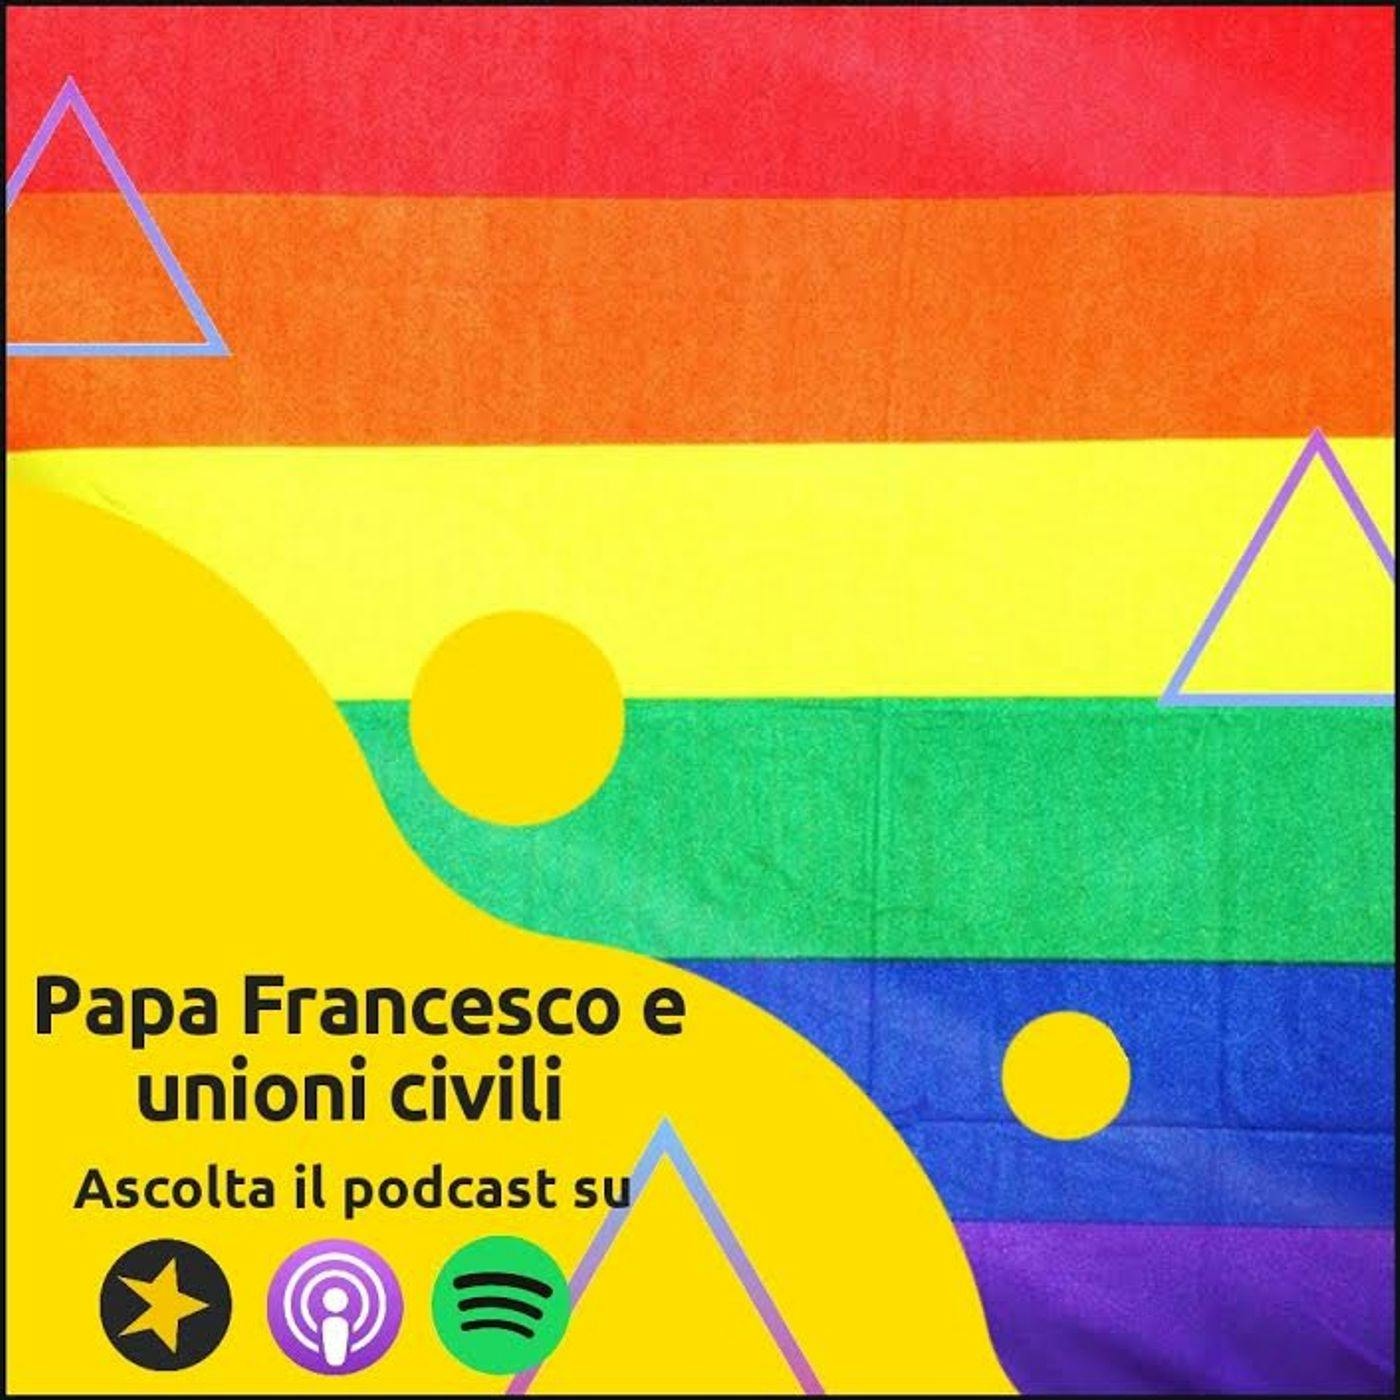 Live: unioni civili e adozioni omosessuali